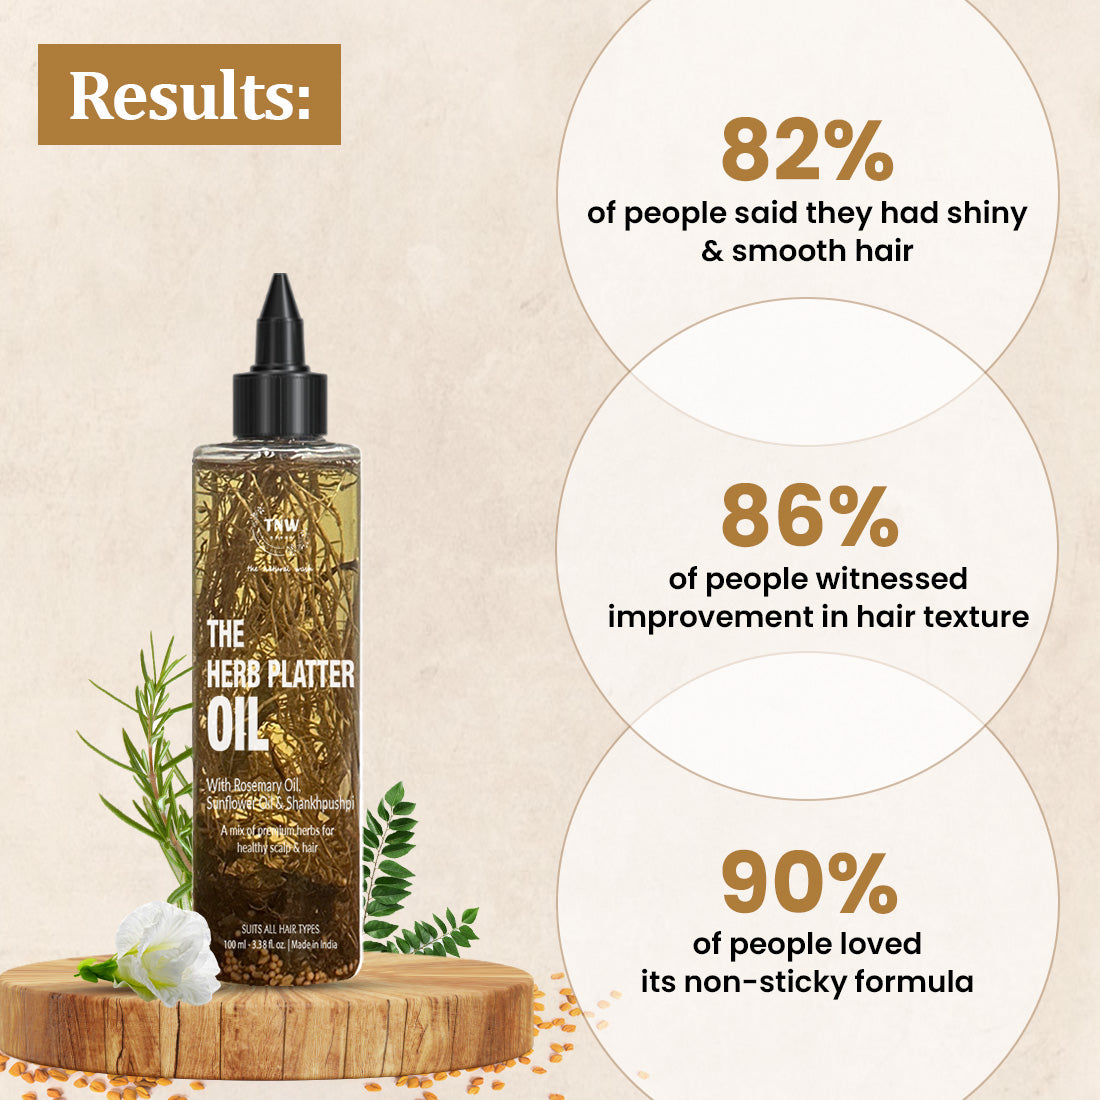 The Herb Platter Oil for healthier hair